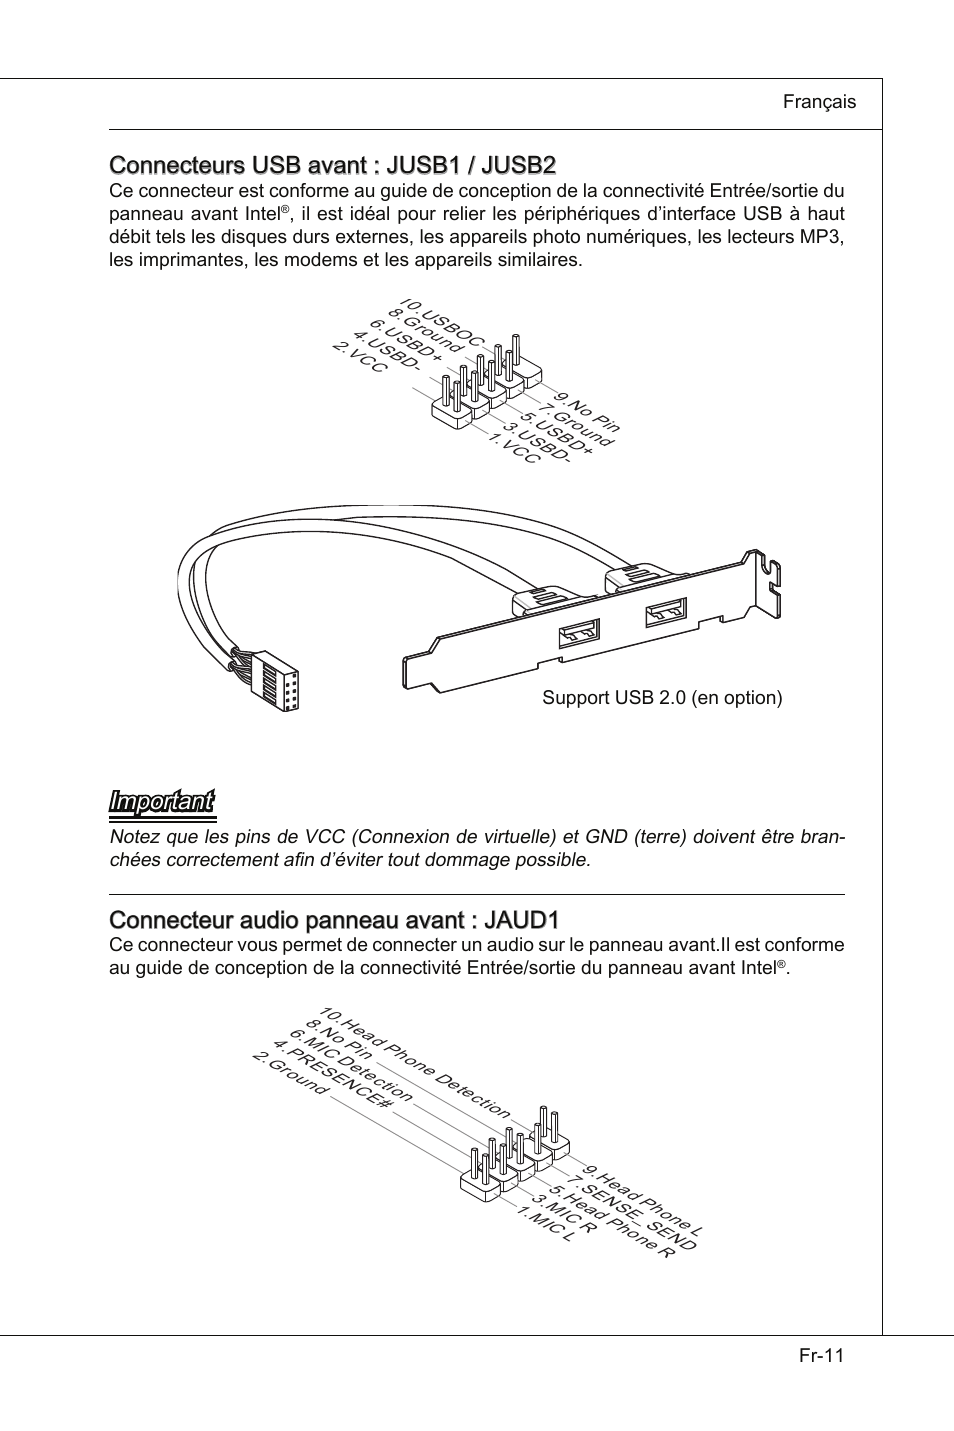 Connecteurs usb avant : jusb1 / jusb2, Important, Connecteur audio panneau  avant : jaud1 | MSI Wind Board D510 User Manual | Page 69 / 106 | Original  mode